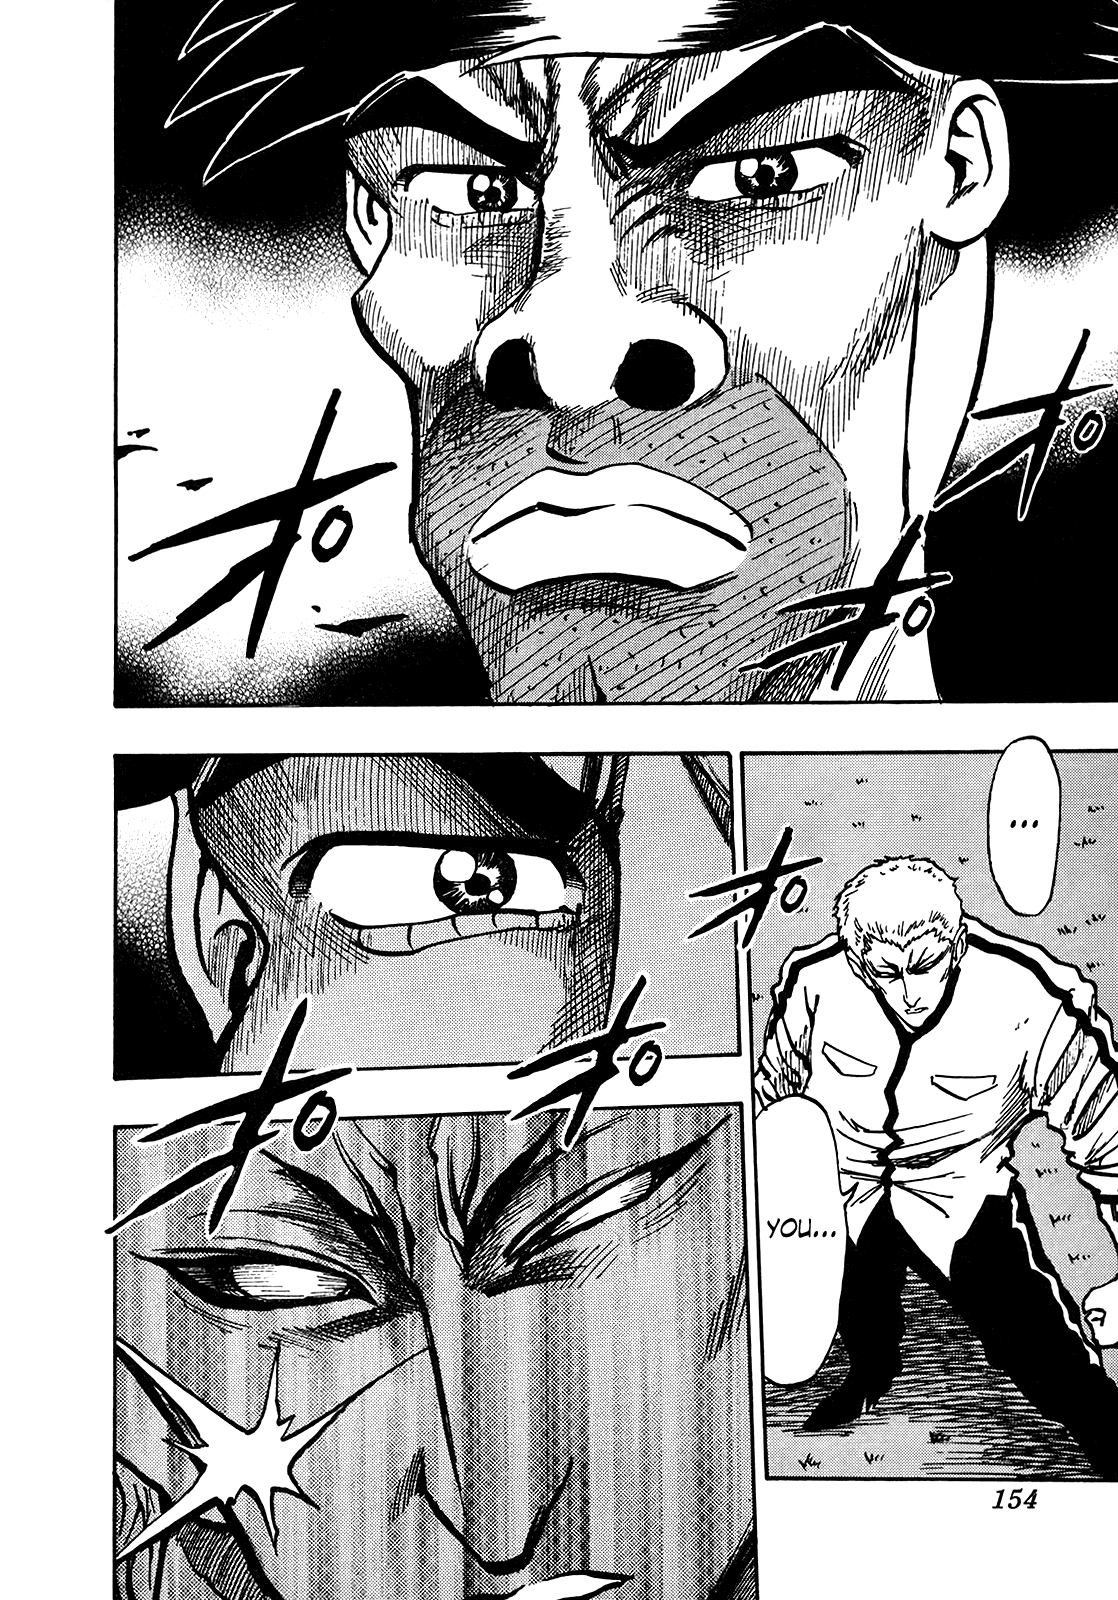 Seikimatsu Leader Den Takeshi! - chapter 237 - #3